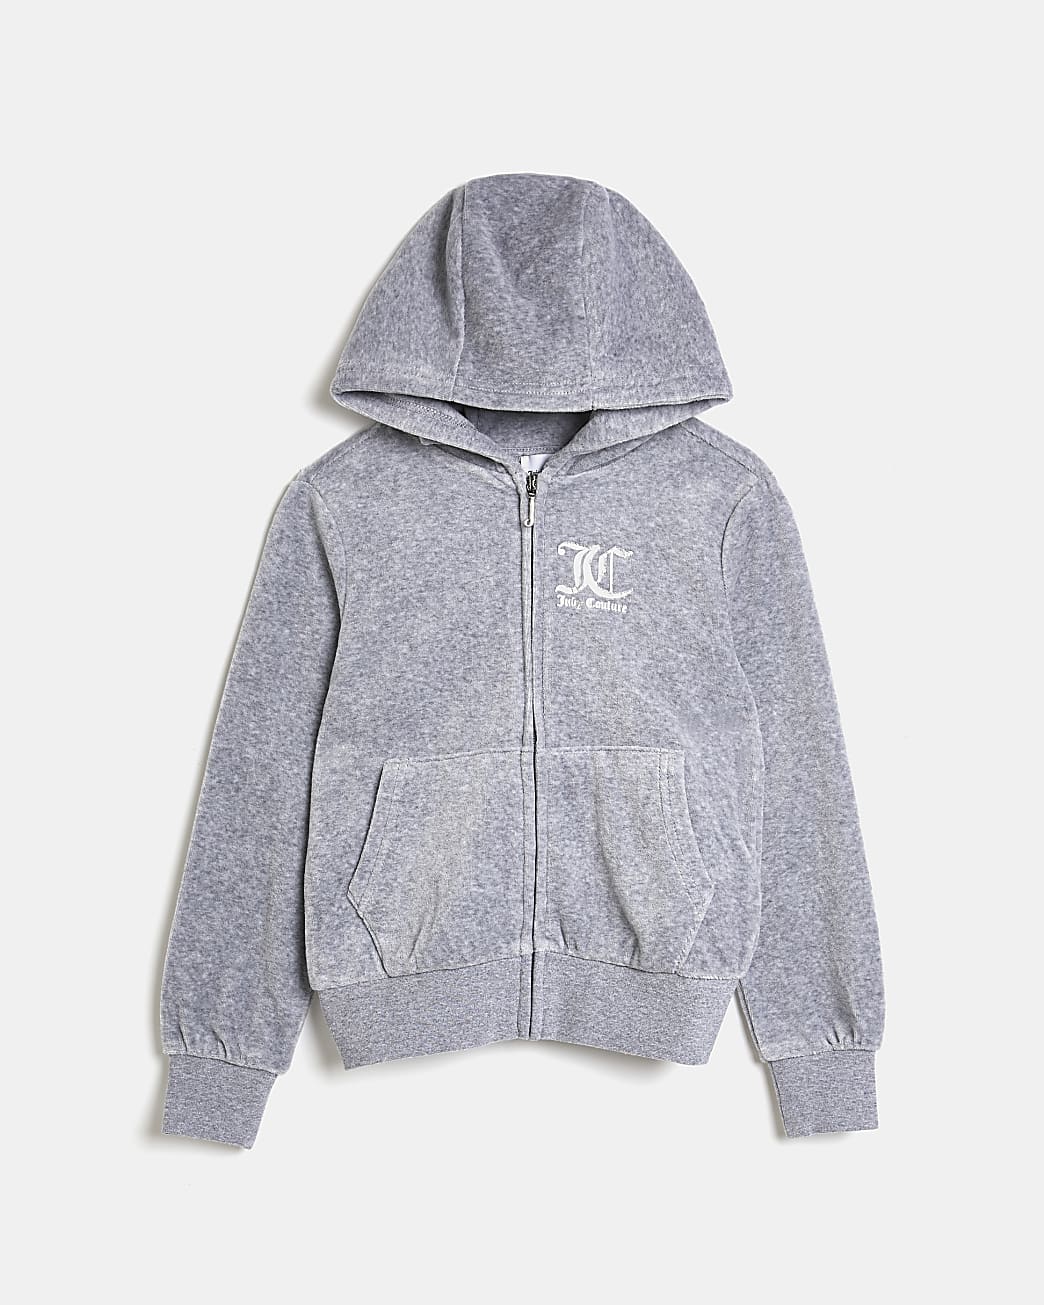 Girls grey Juicy Couture hoodie